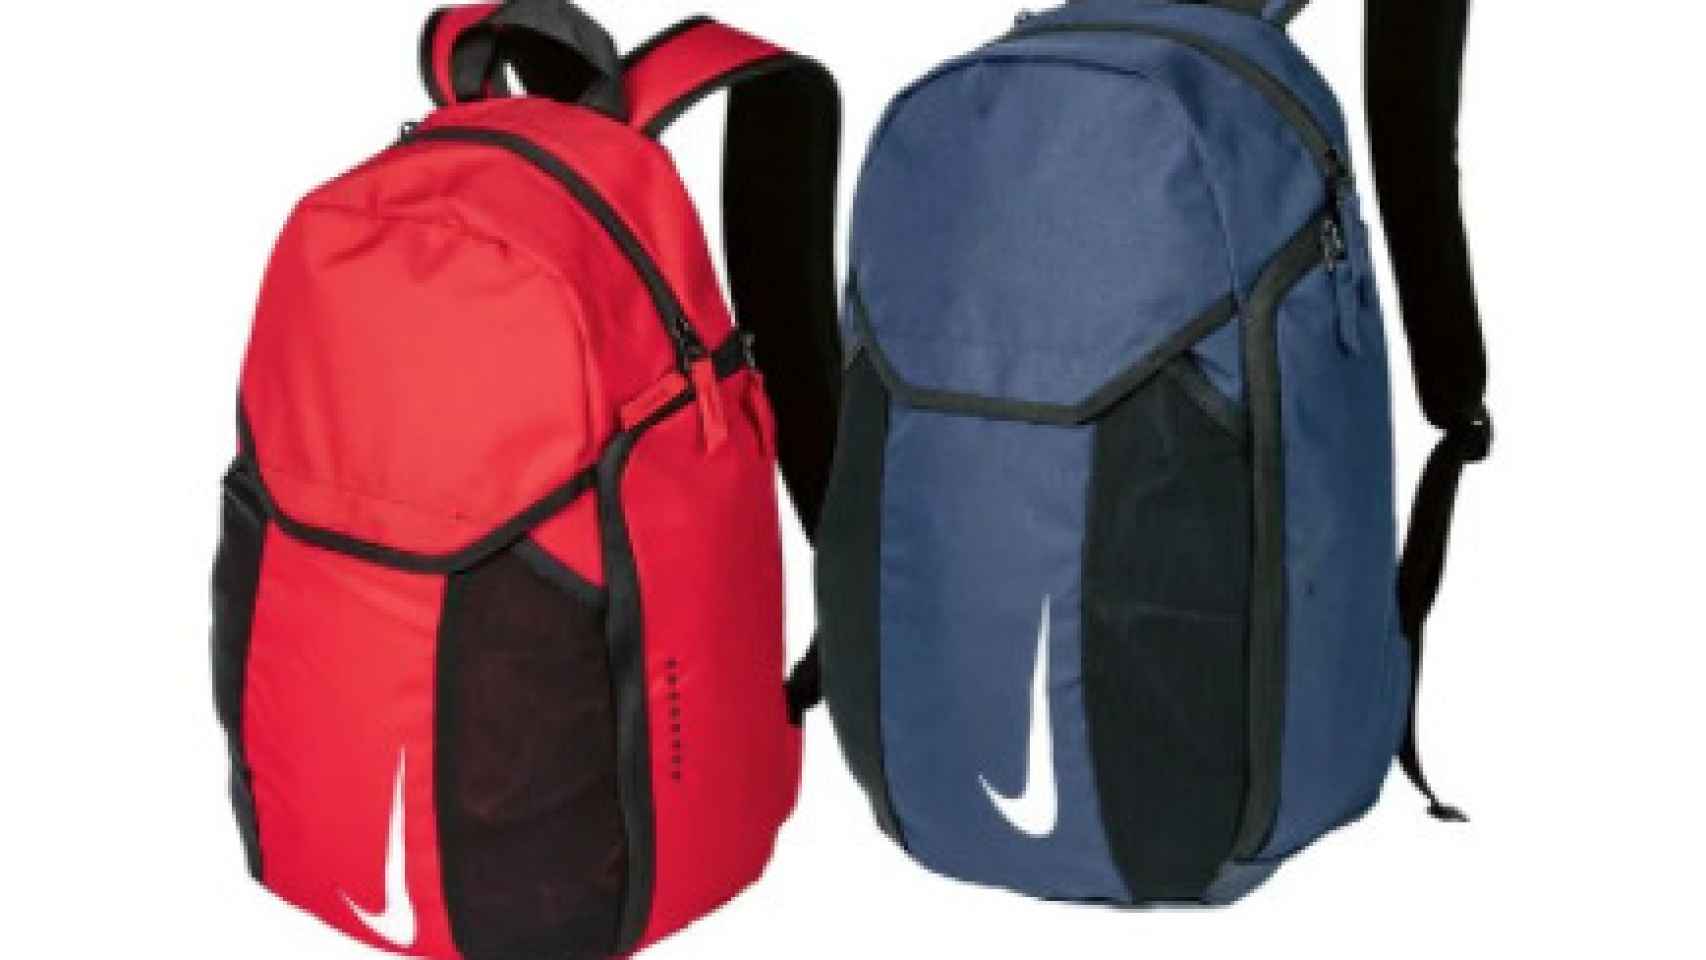 ya vende mochilas tiradas de precio para la vuelta al colegio o para el gimnasio: los modelos